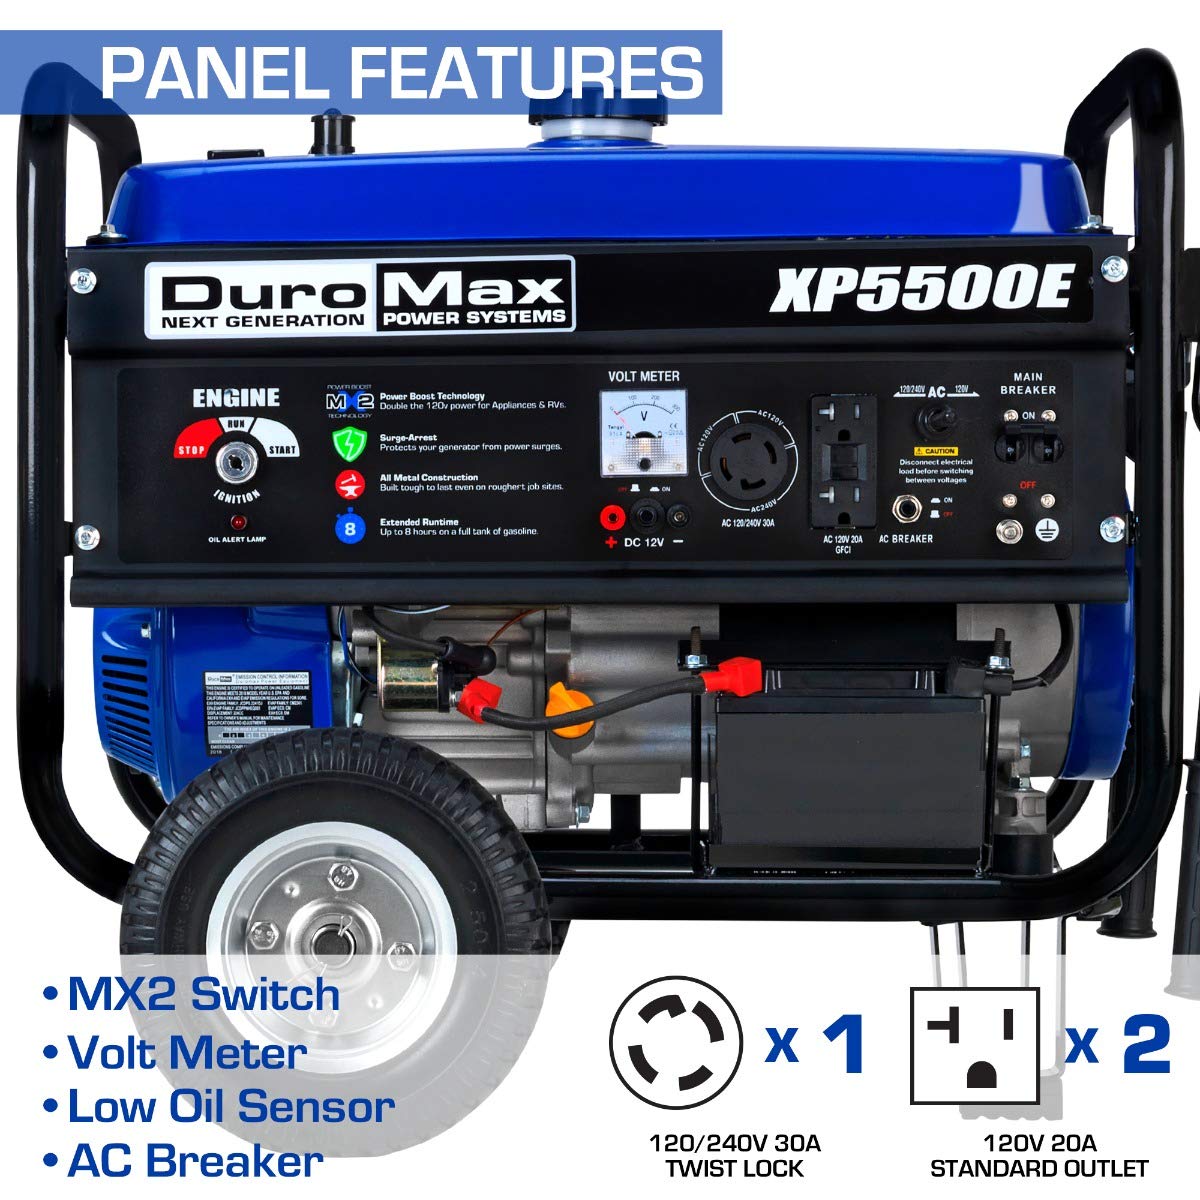 DuroMax XP5500E Générateur portable à gaz - 5 500 W - Démarrage électrique - Prêt pour le camping et les camping-cars - Approuvé par 50 États - Bleu/noir - 5 500 W 